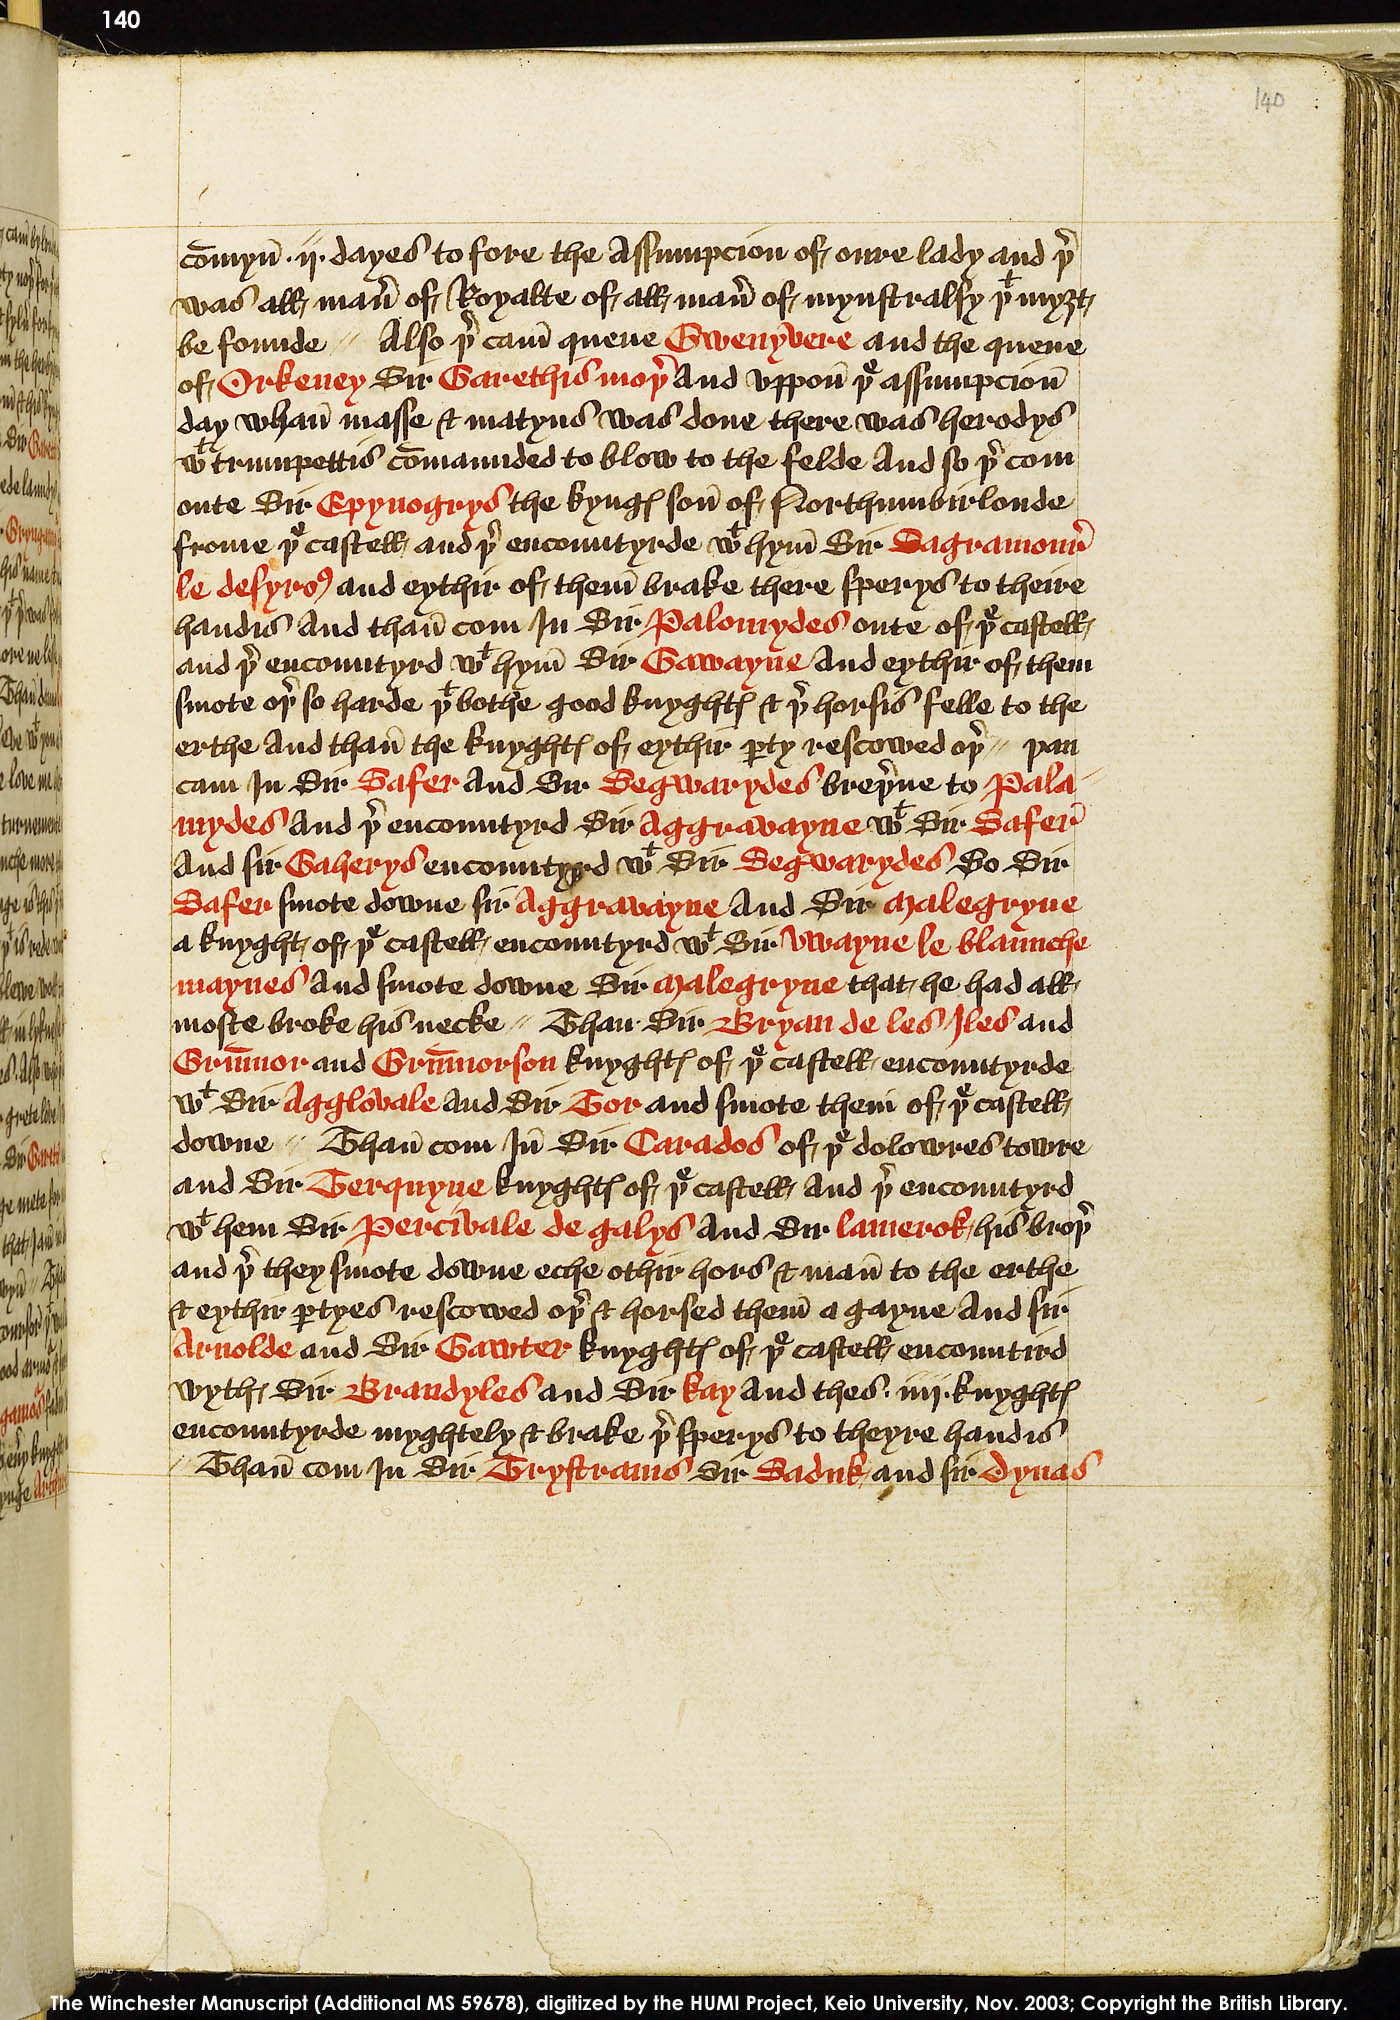 Folio 140r